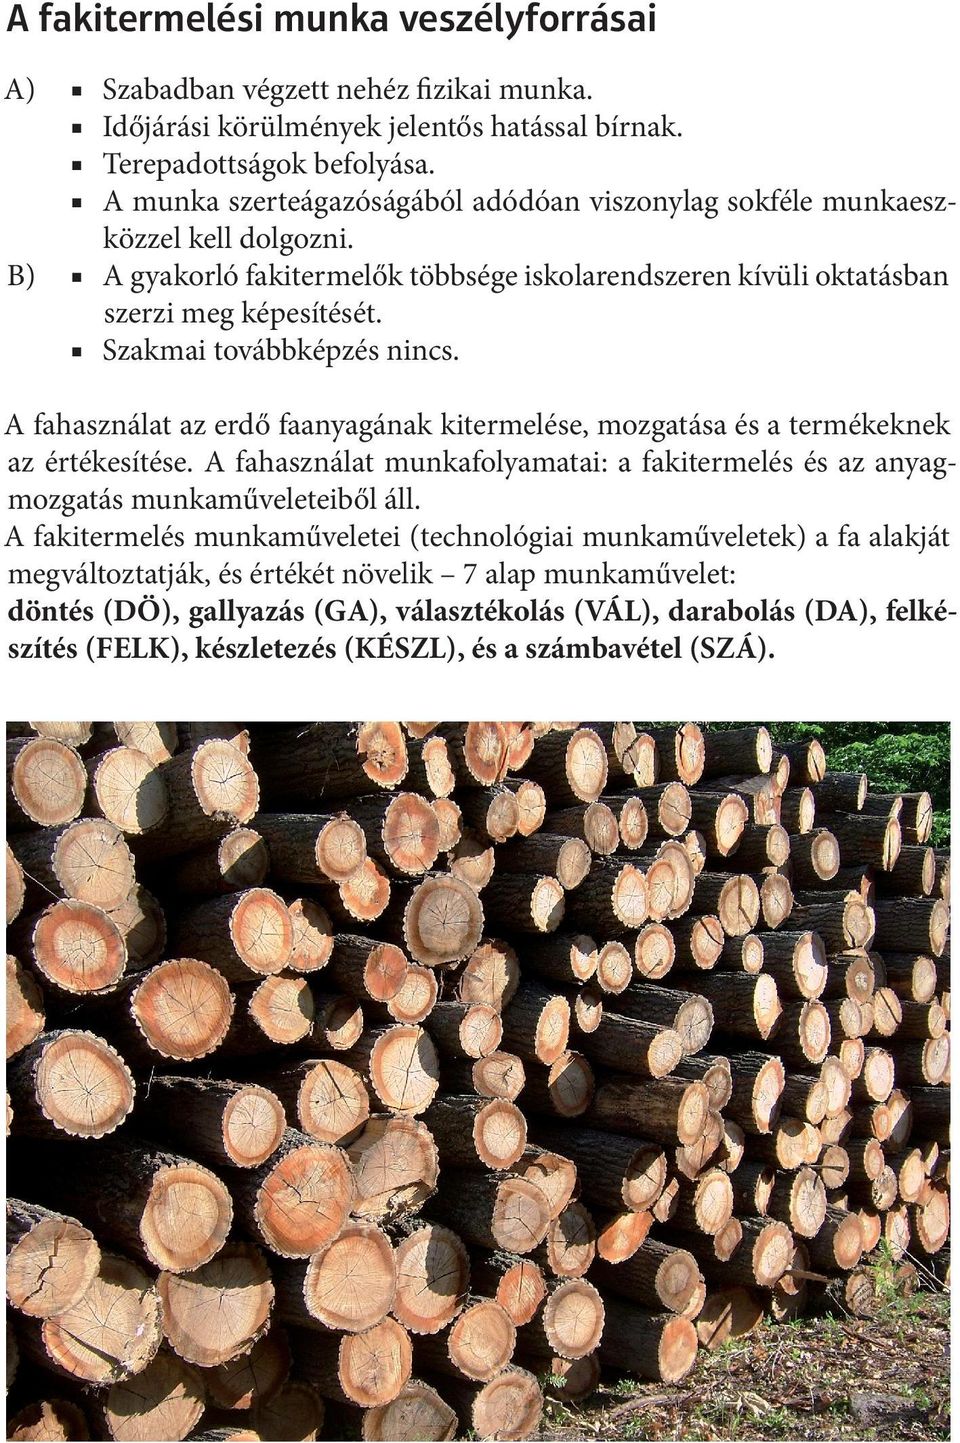 Szakmai továbbképzés nincs. A fahasználat az erdő faanyagának kitermelése, mozgatása és a termékeknek az értékesítése.